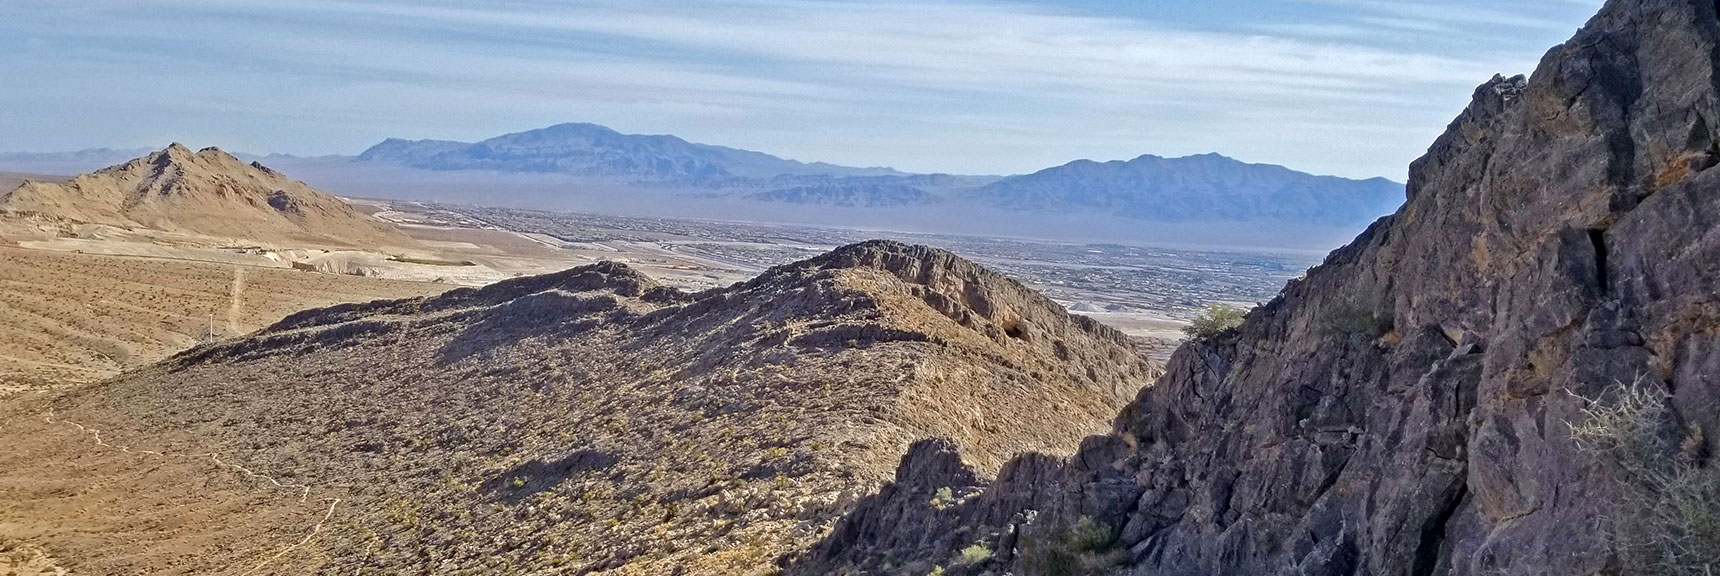 View North to Sheep Range and Gass Peak from Cheyenne Mt. Summit Ridge | Cheyenne Mountain | Las Vegas, Nevada